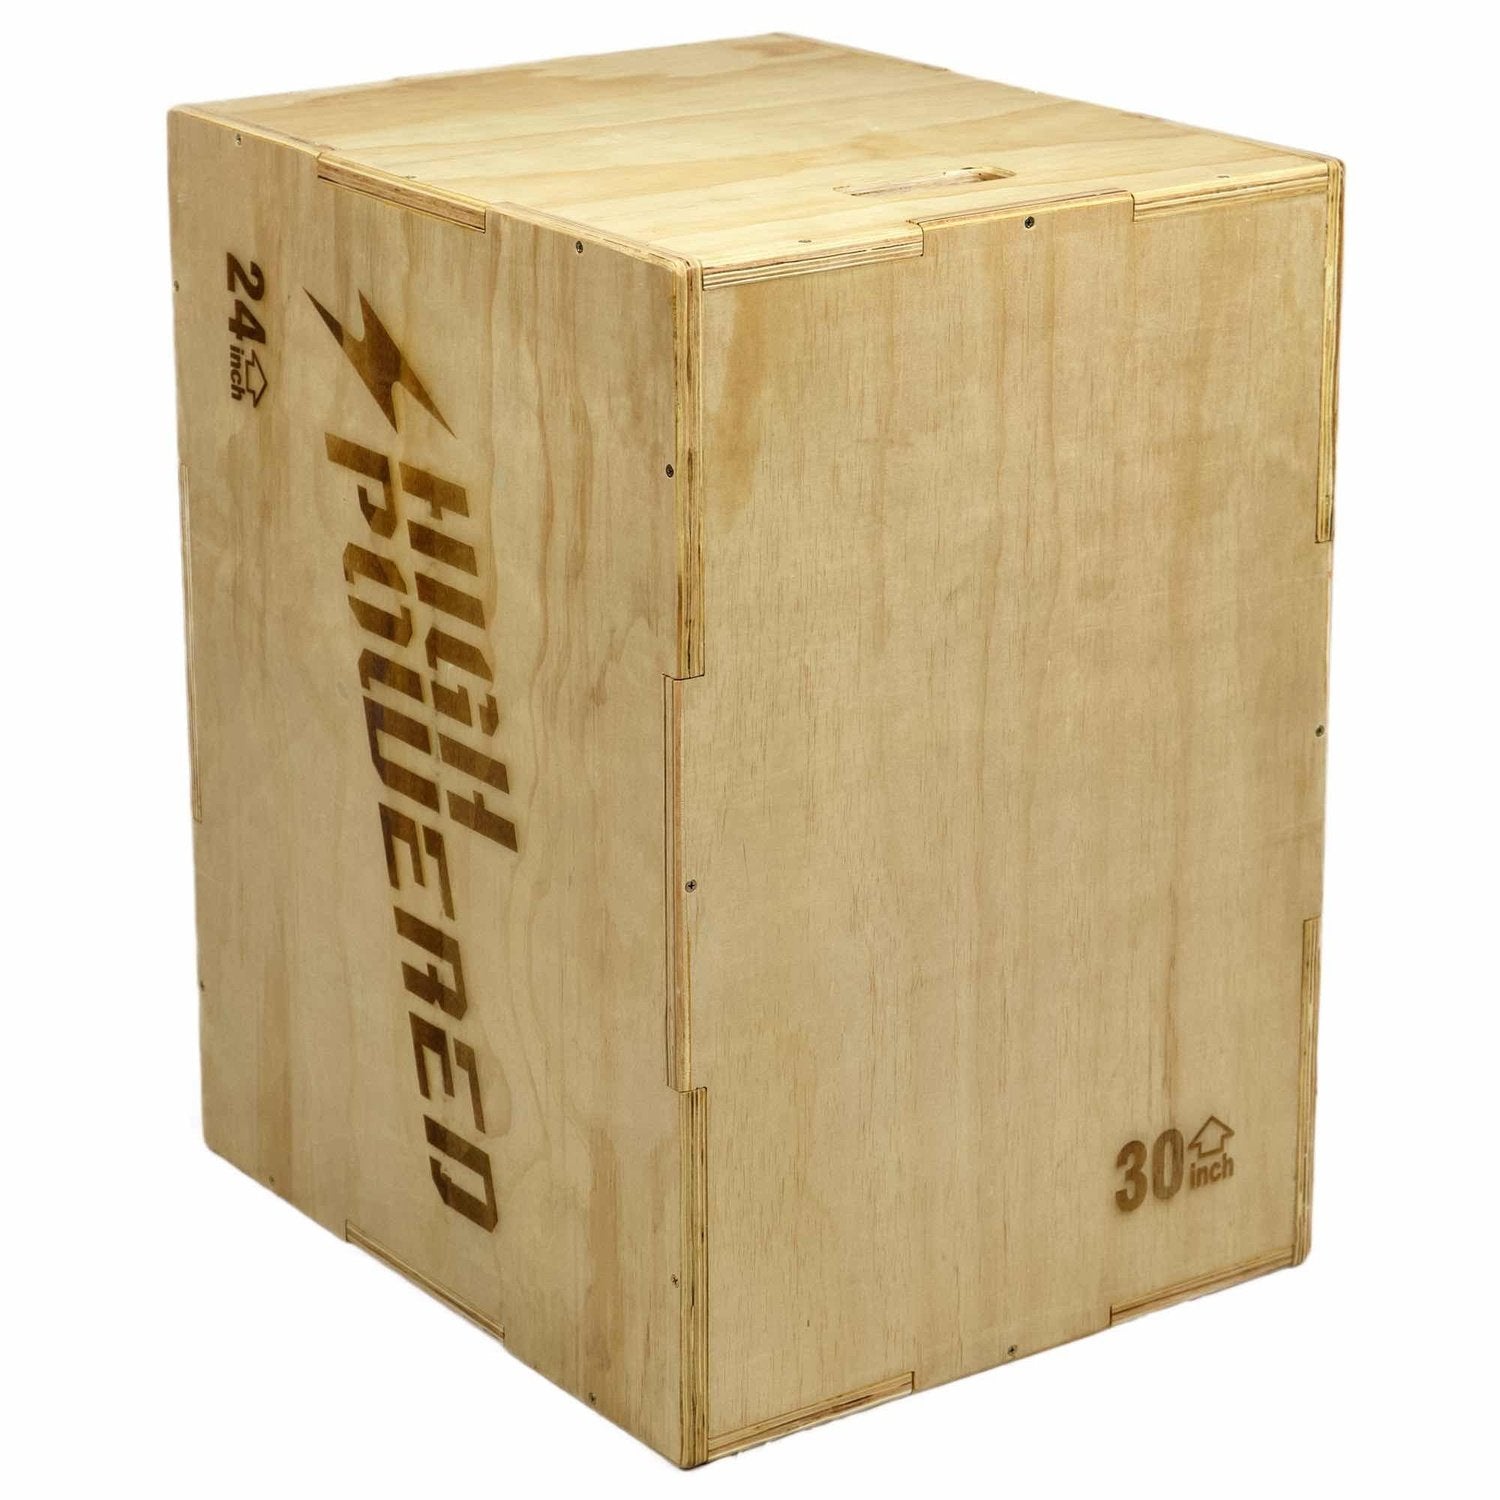 HighPowered Plyobox Holz (3-in-1 Jump Box) kaufen bei HighPowered.ch